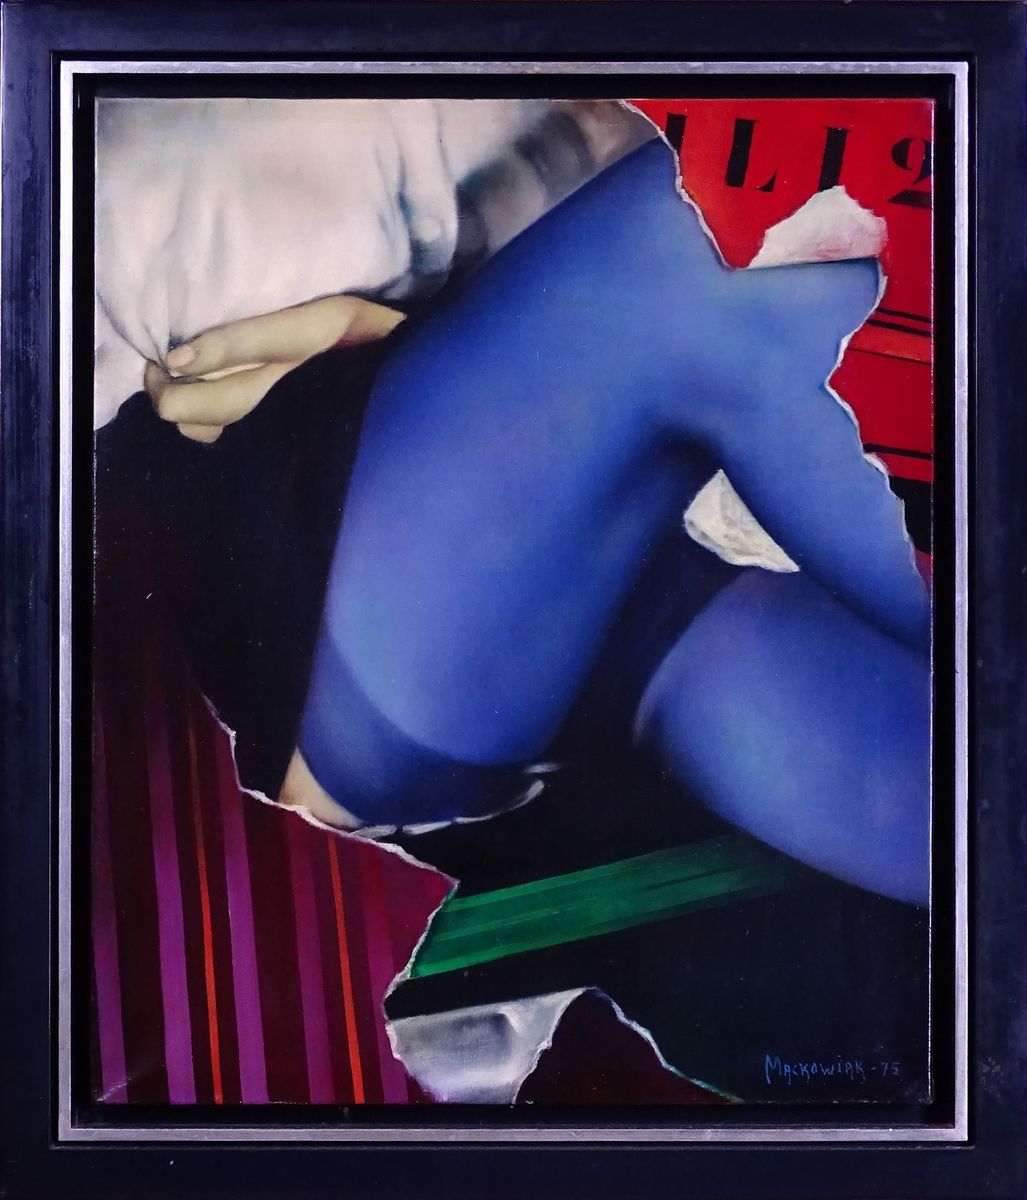 MACKOWIAK Erwin Painting HST -The Blue Stockings- dated 75 signed *MACKOWIAK E.*&hellip;